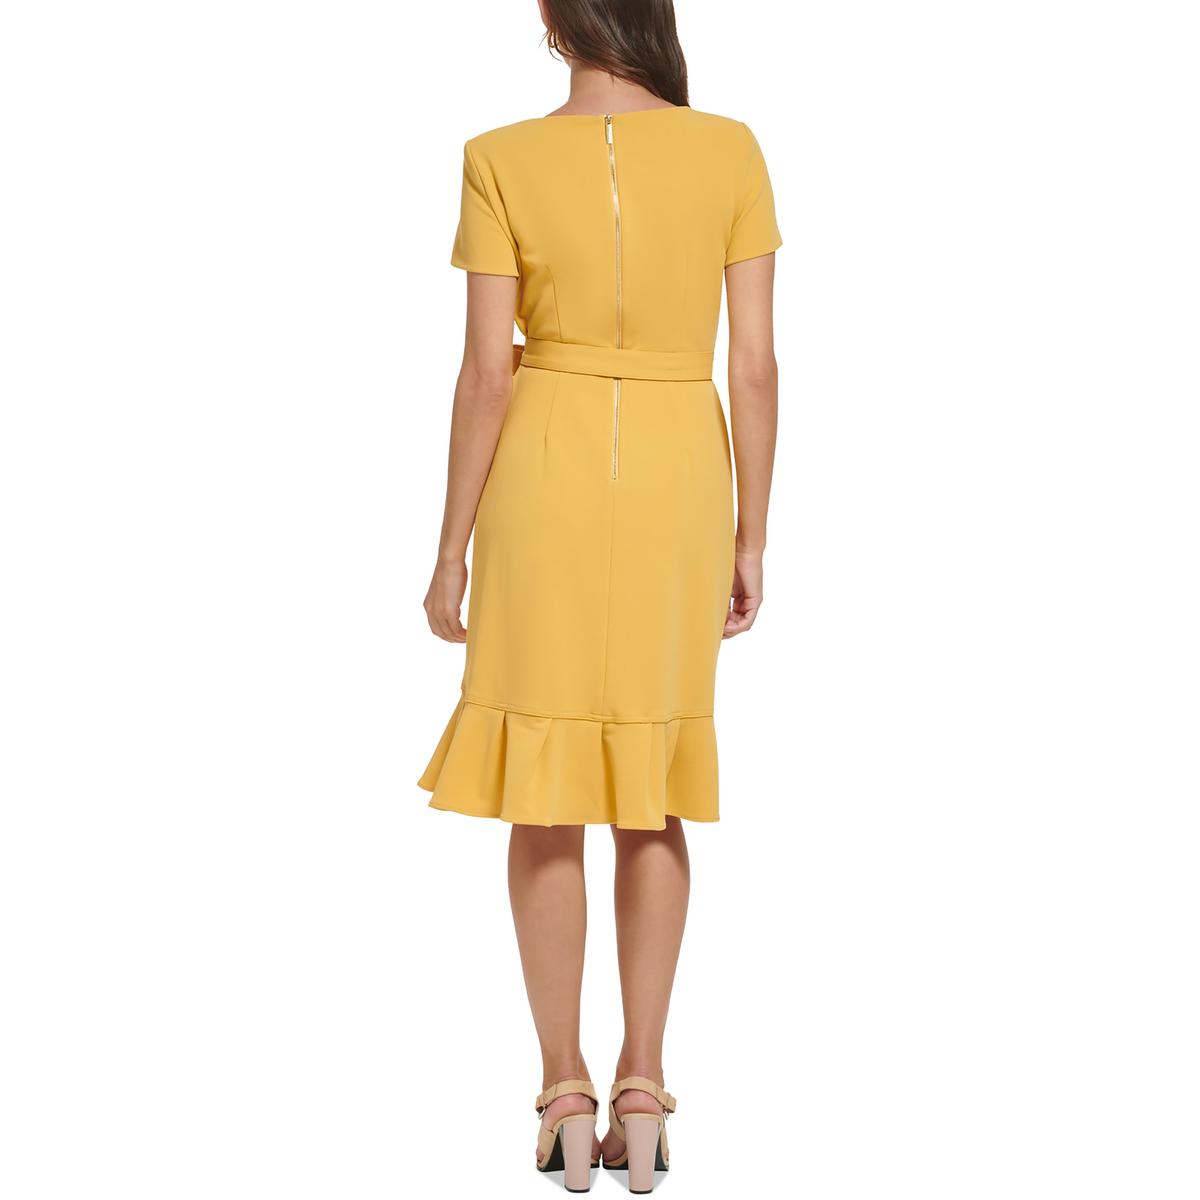  Women's Wear To Work Dresses - Calvin Klein / 4P